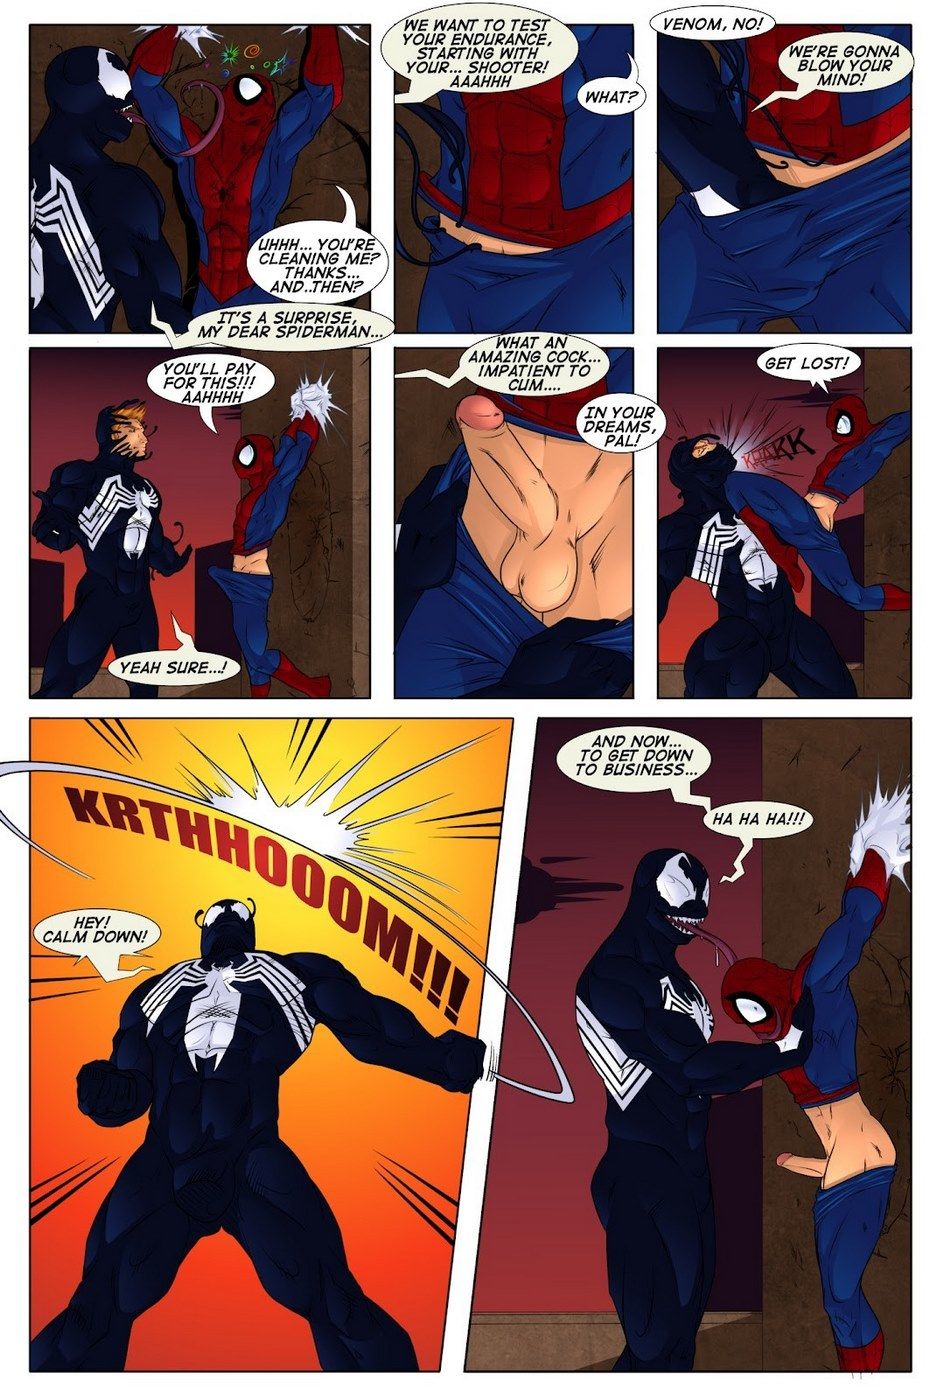 Shooters (Spider-Man Venom) page 4